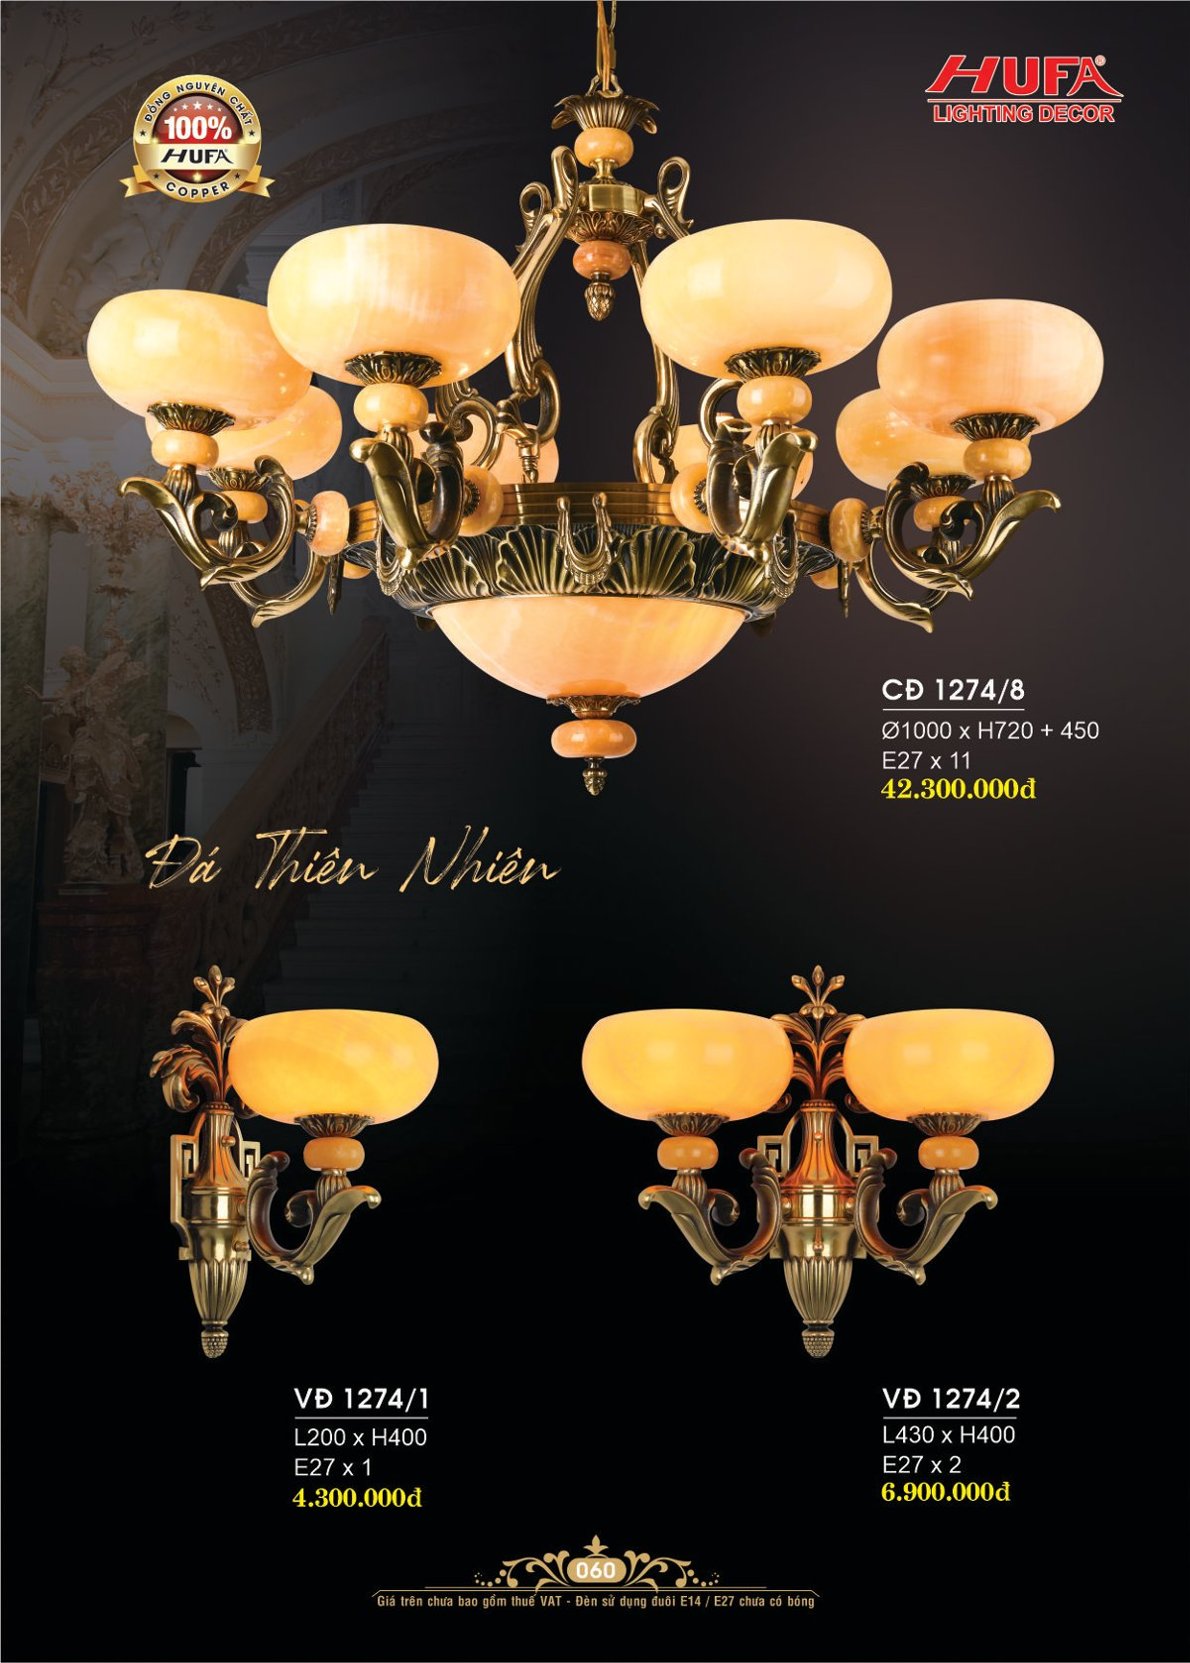 Đèn chùm đồng nguyên chất, đèn trang trí Hufa CĐ 1192/20+5 cao cấp, giá rẻ, bảo hành lâu dài, hỗ trợ lắp đặt, giao hàng toàn quốc. Đèn chùm đồng Hufa được bảo trì trọn đời